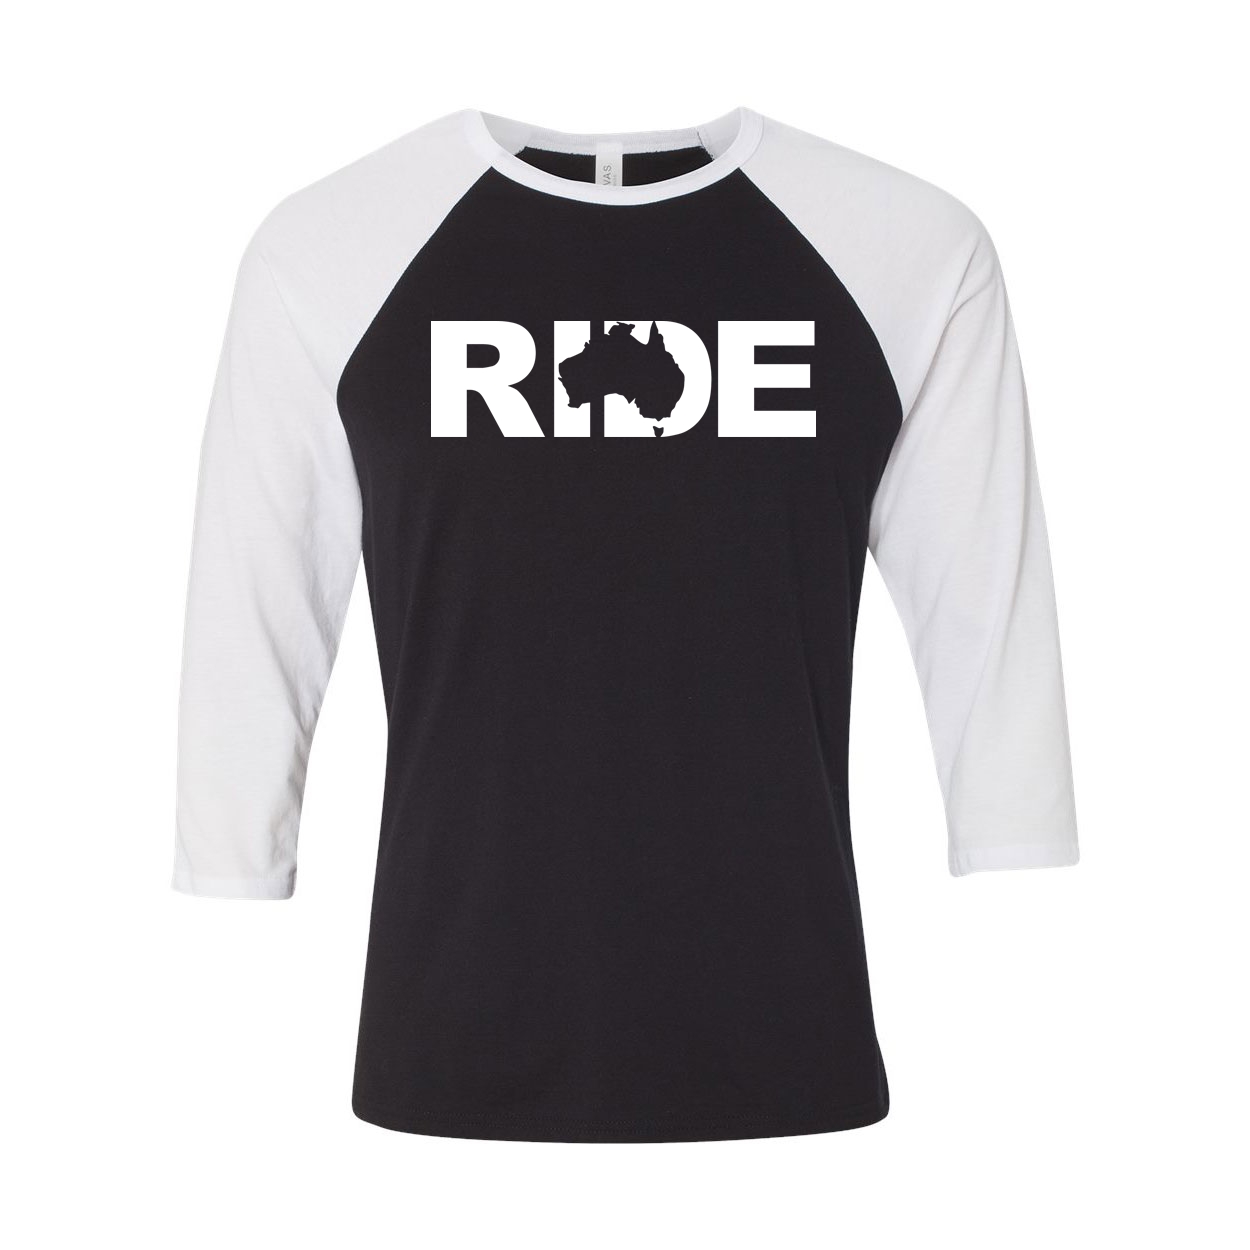 Ride Australia Classic Raglan Shirt Black/White (White Logo)